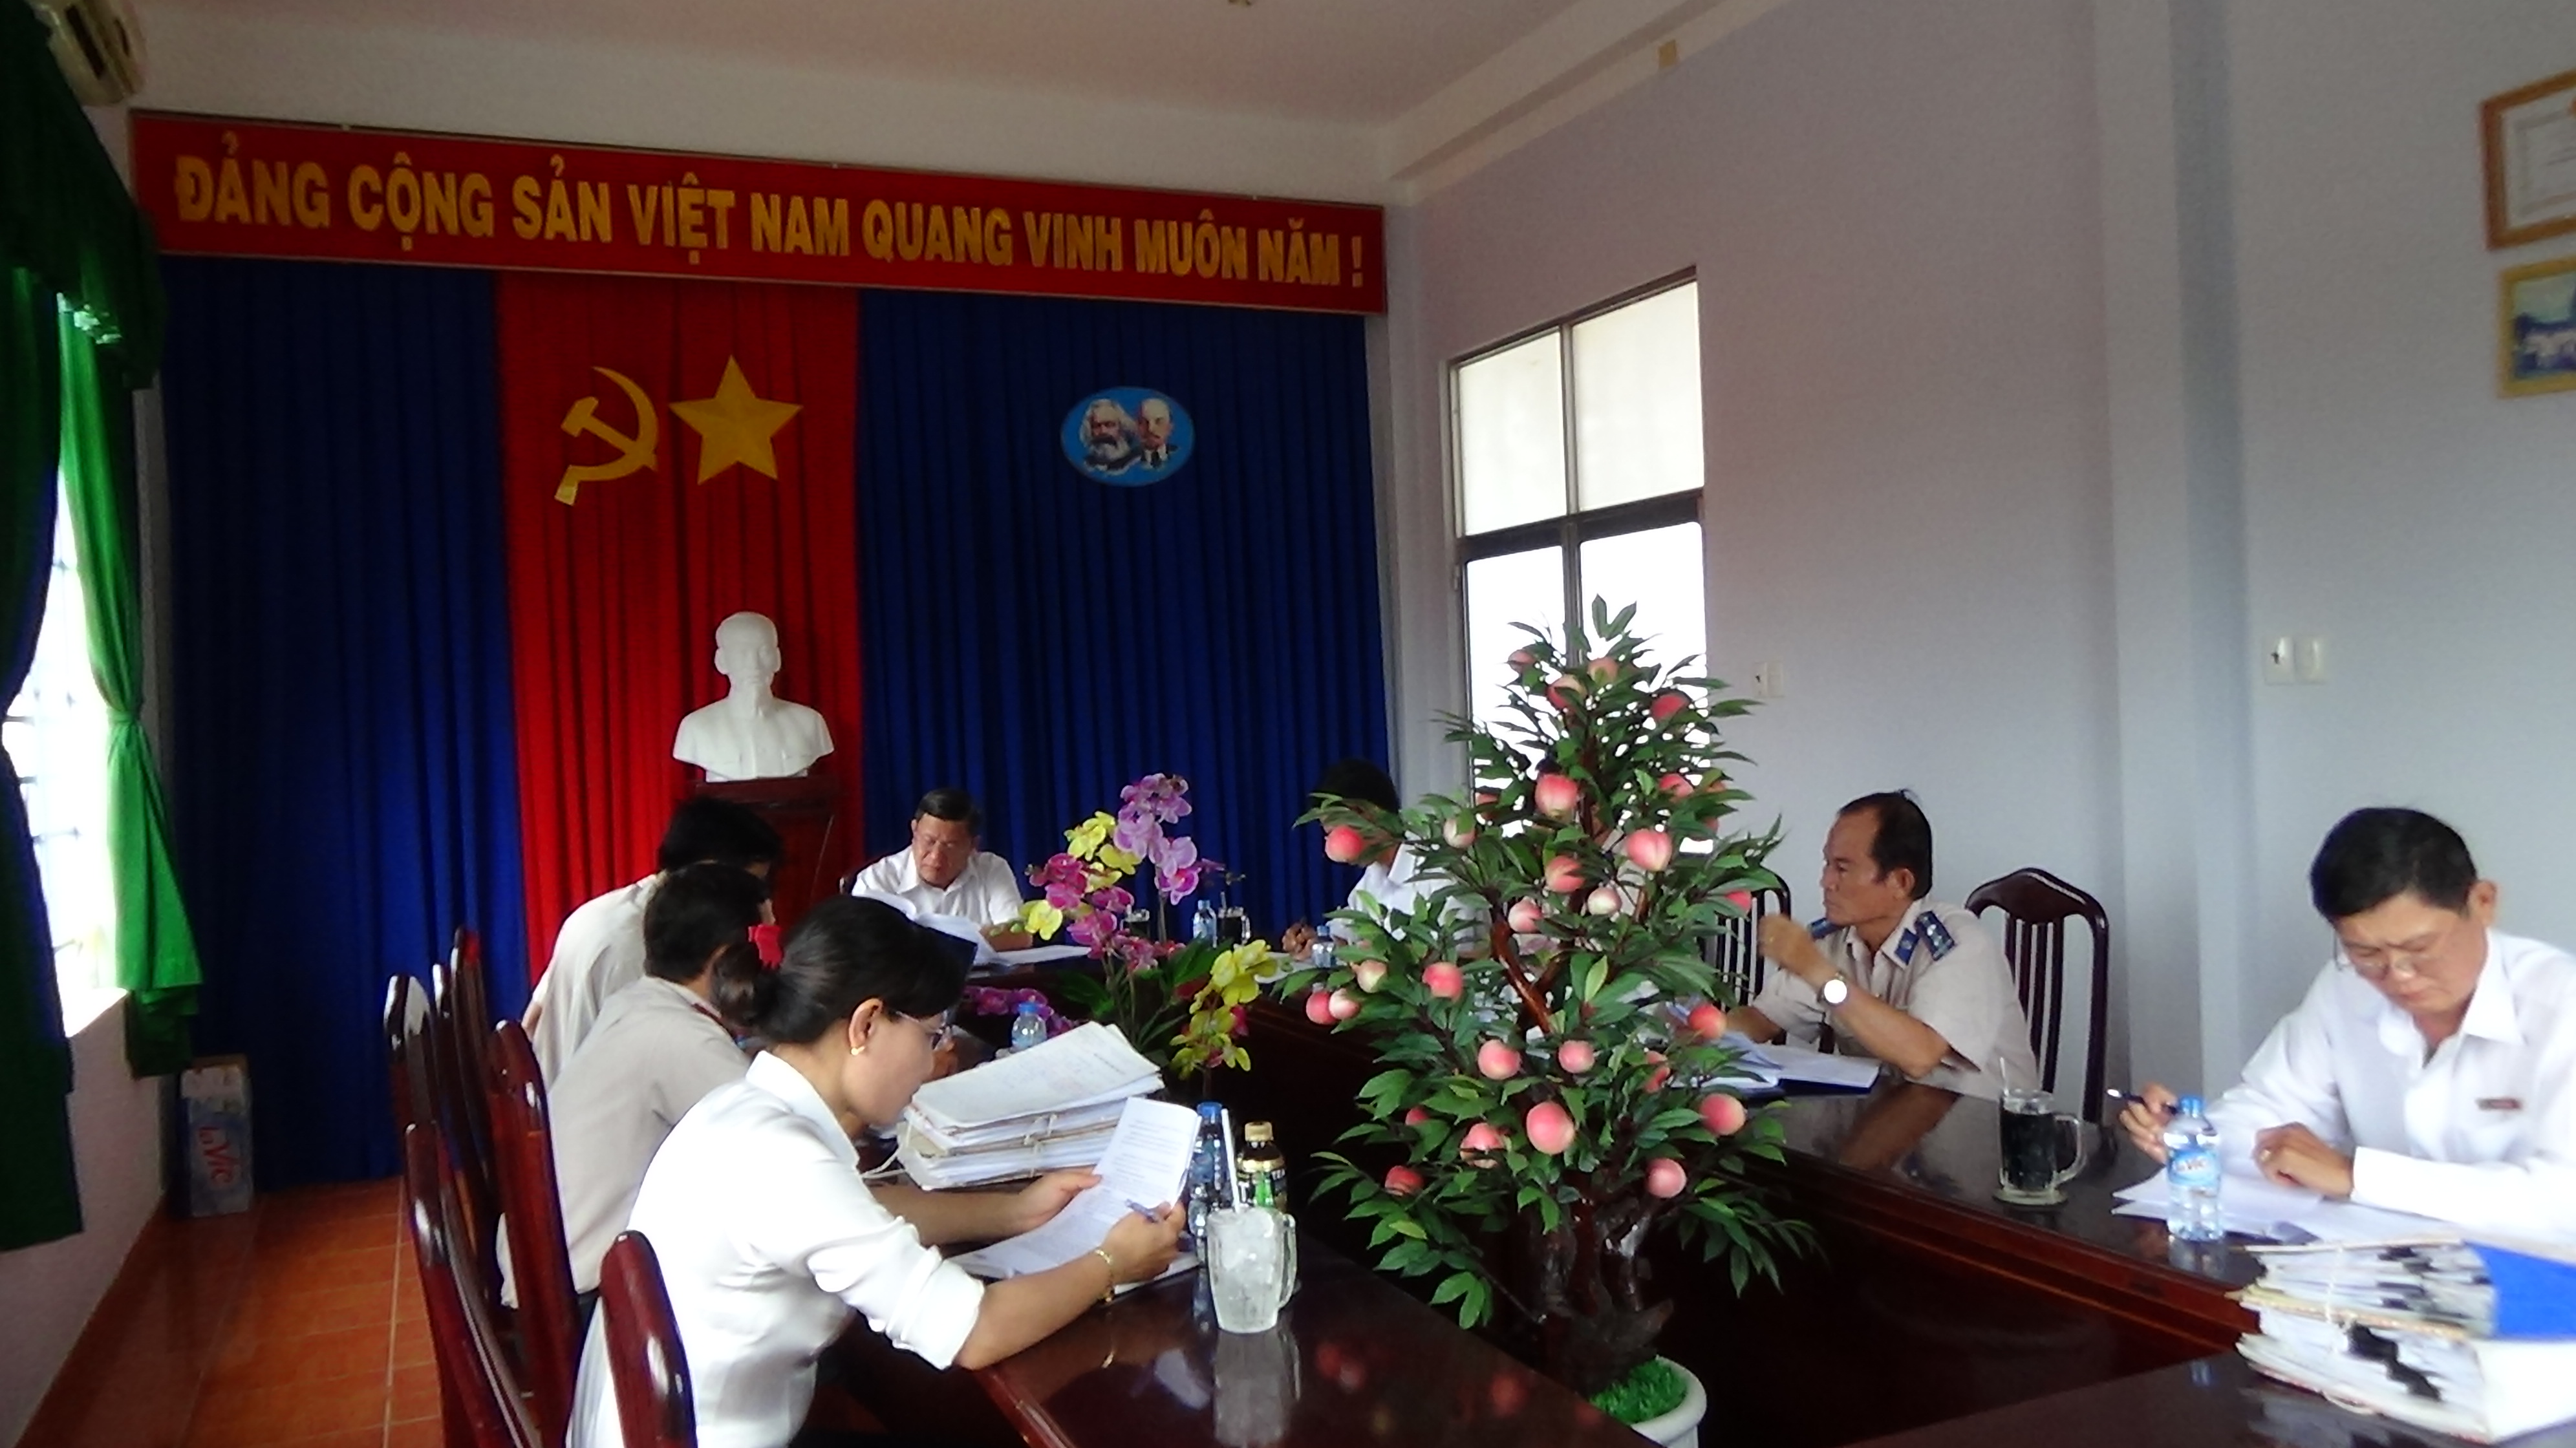 Cục trưởng Cục Thi hành án dân sự kiểm tra các việc thi hành án dân sự mà bên được thi hành án là Ngân hàng Nông nghiệp và Phát triển Nông thôn tại Chi cục Thi hành án dân sự huyện Thủ Thừa